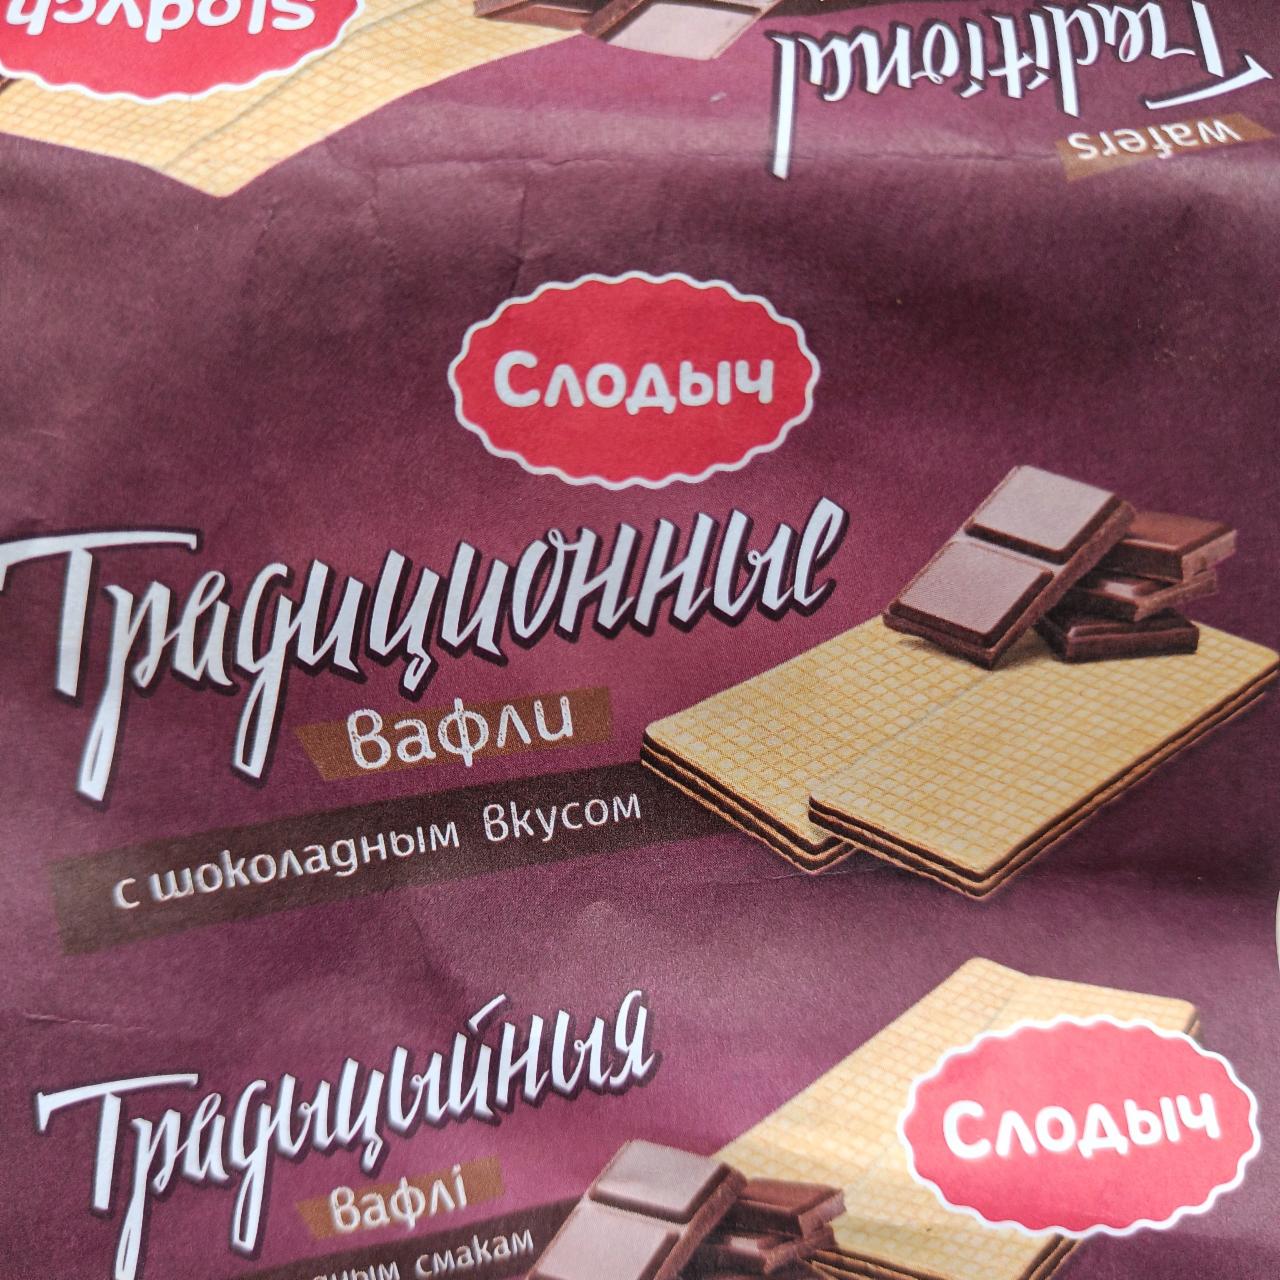 Фото - Вафли традиционные с шоколадным вкусом Слодыч